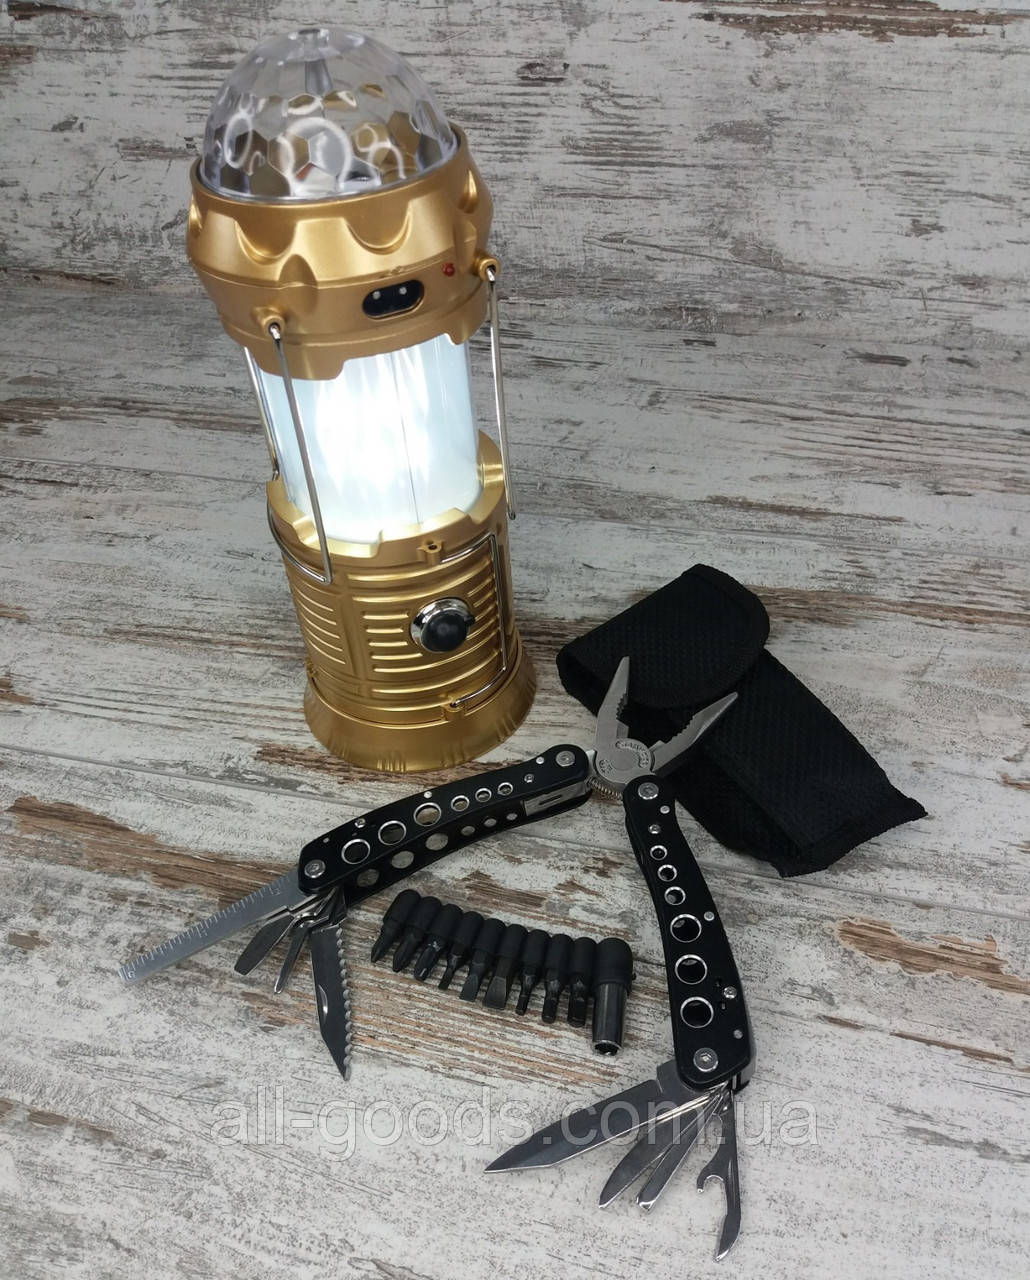 LED лампа с эффектом огня и дискошаром в комплекте с многофункциональным ножом мультитул-плоскогубцы All